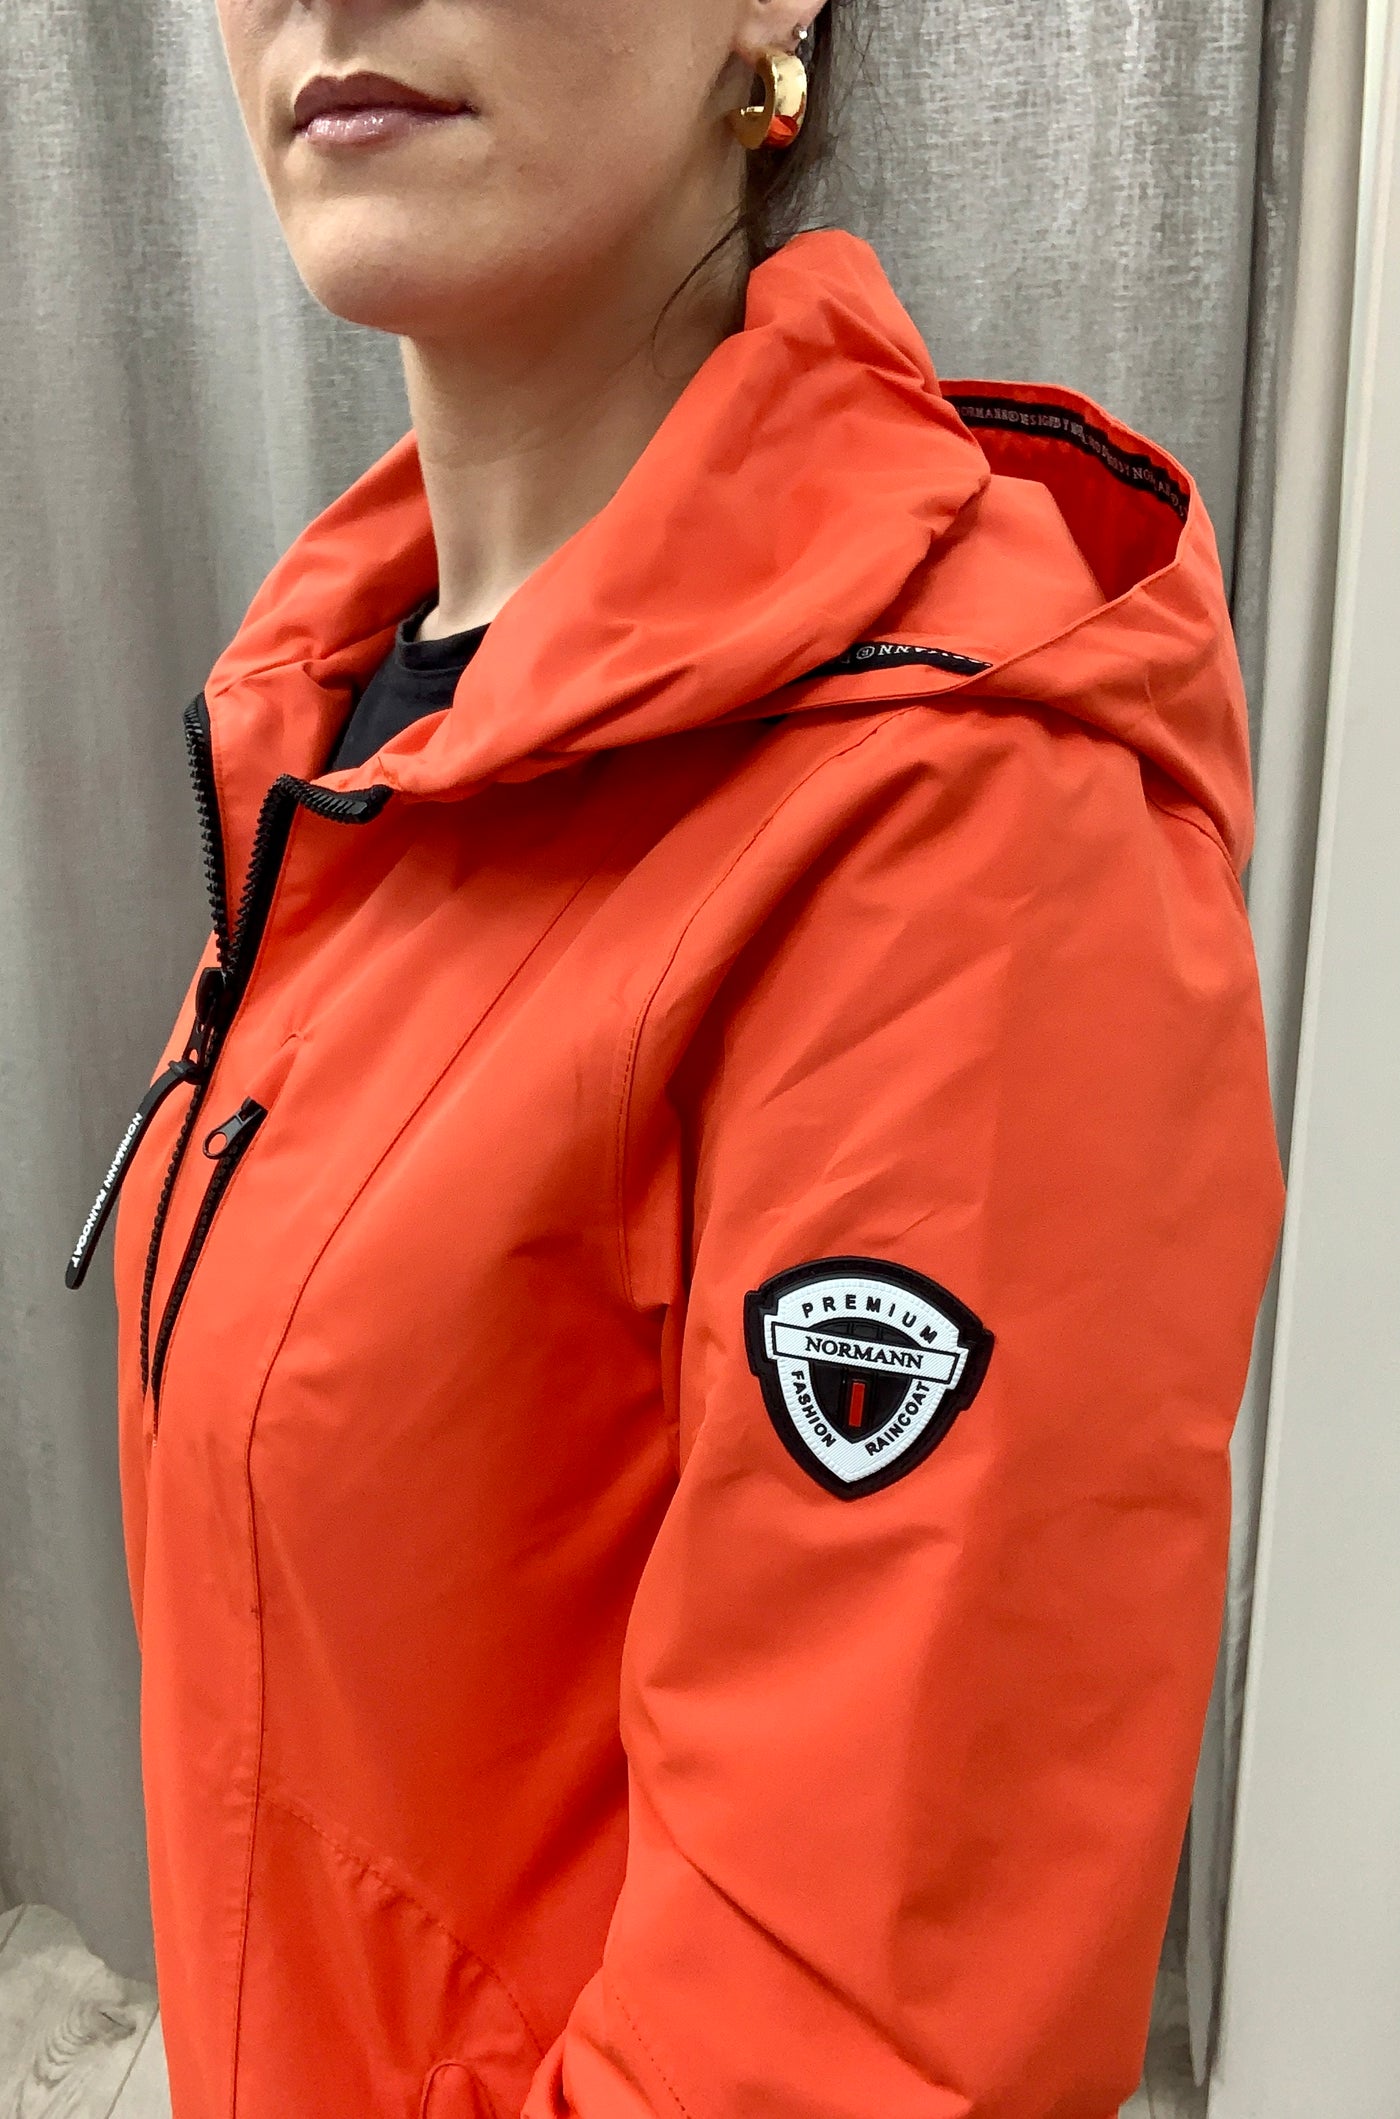 Normann women's rain jacket waterproof windproof detachable hood